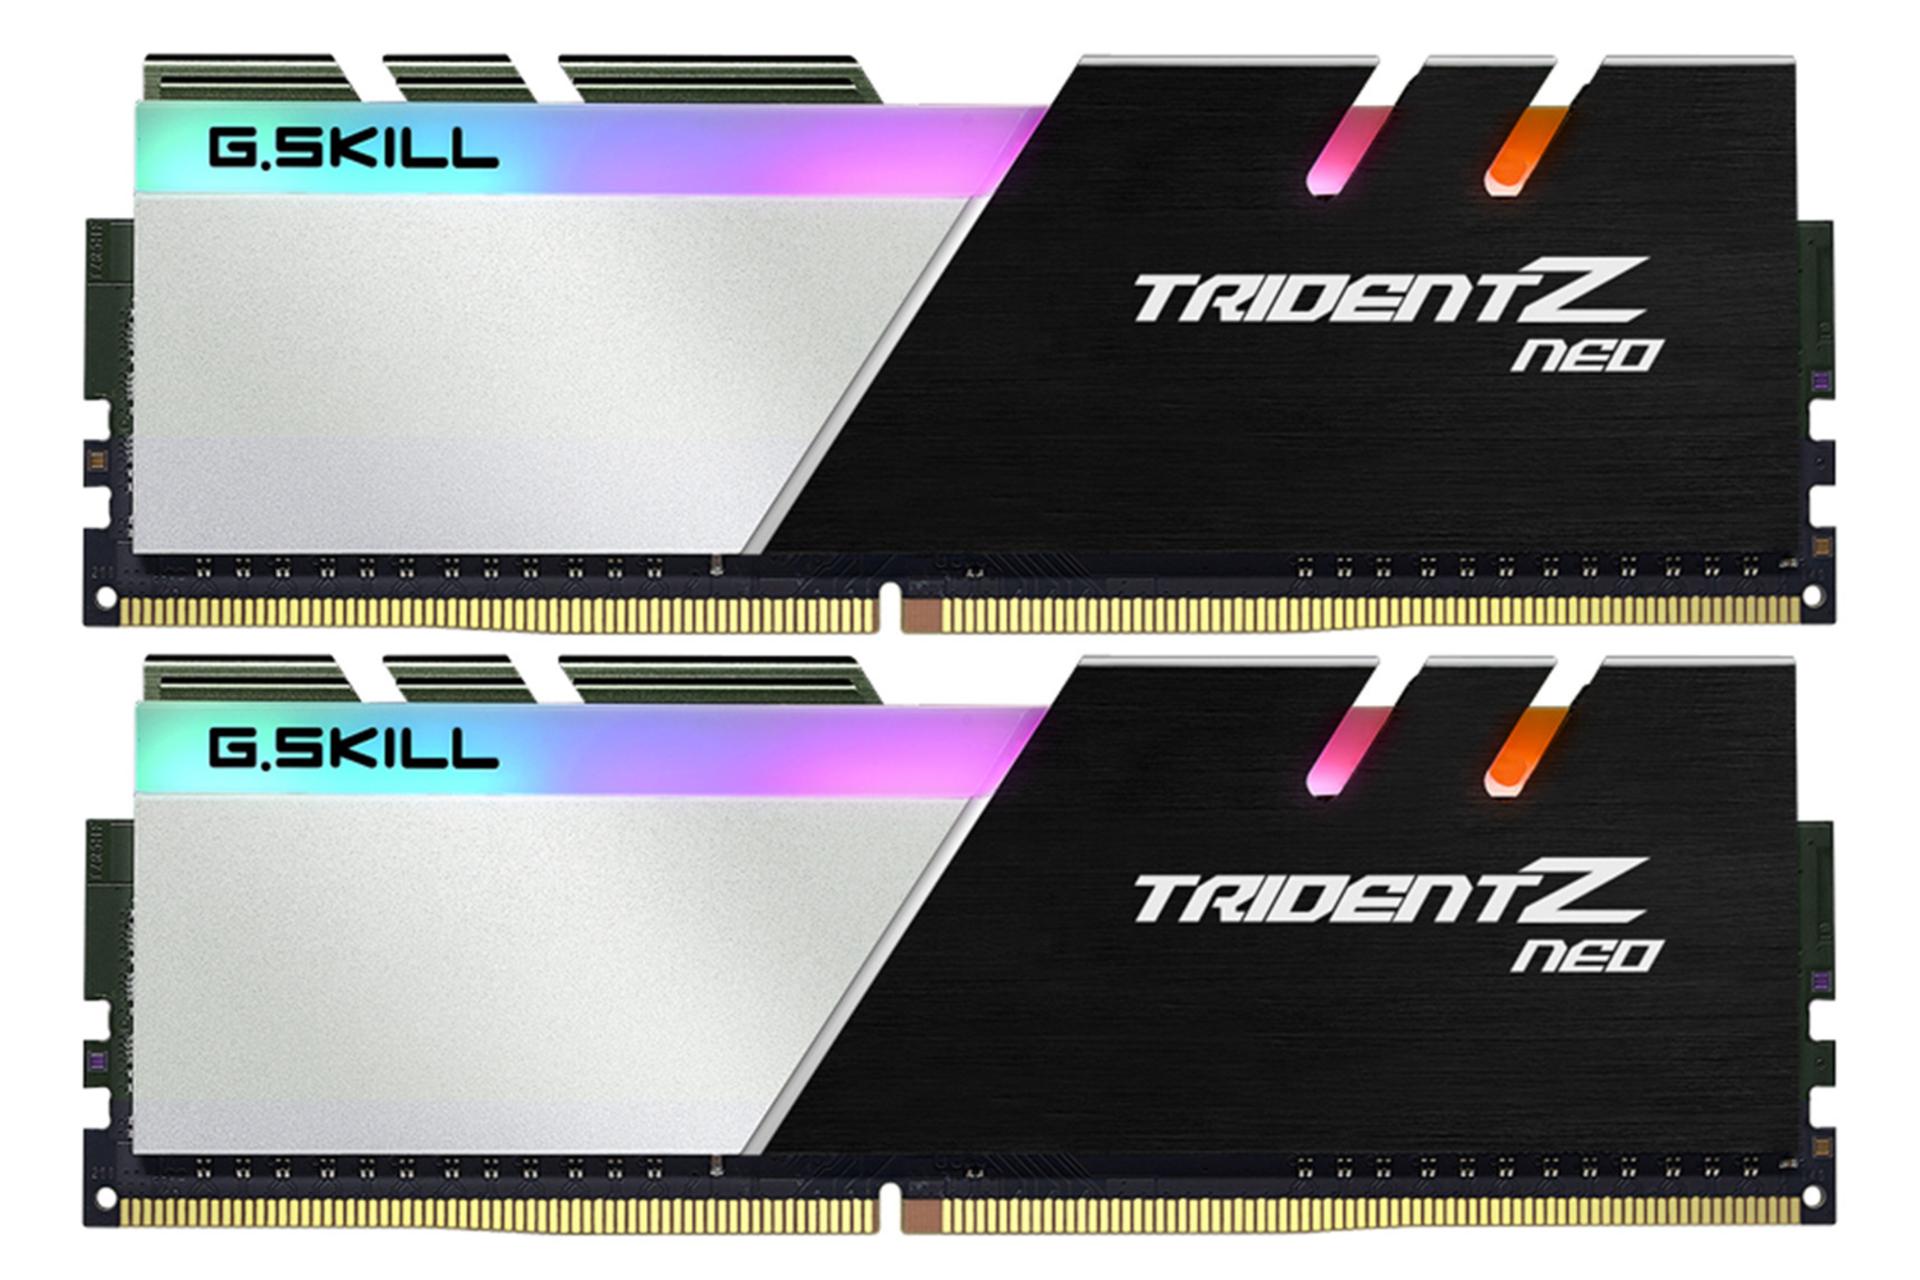 رم جی اسکیل Trident Z Neo ظرفیت 64 گیگابایت (2x32) از نوع DDR4-3600